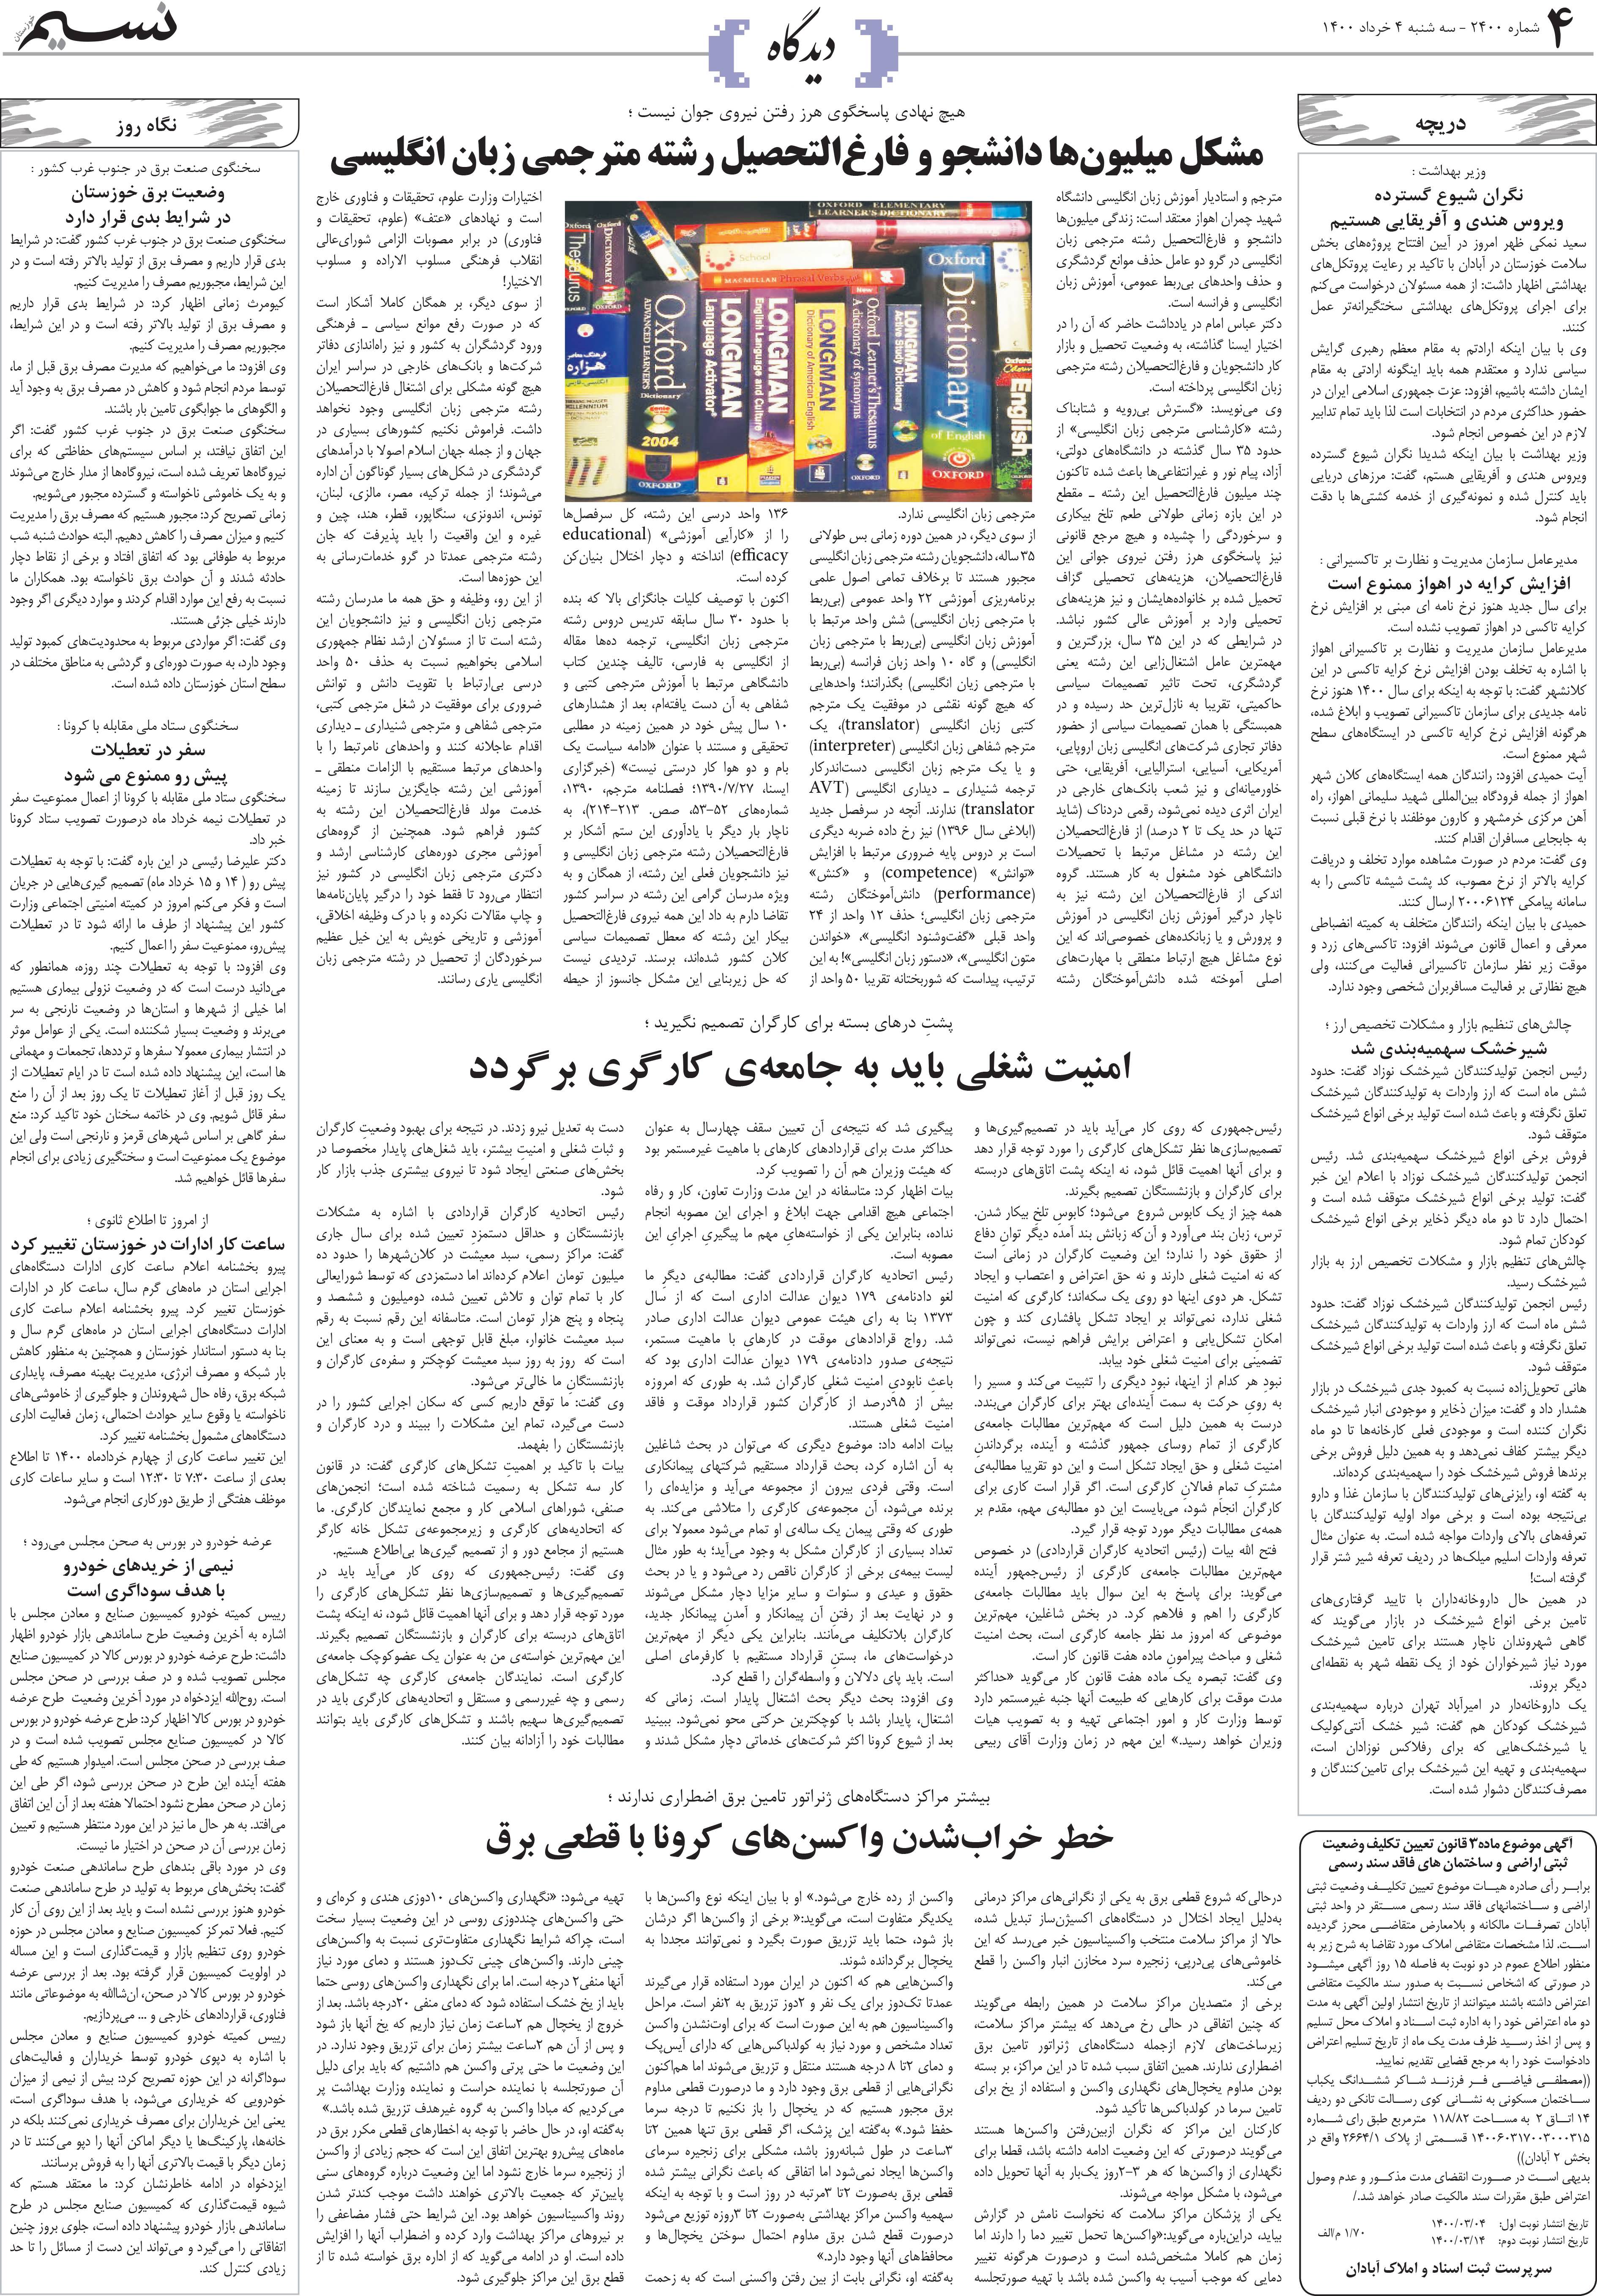 صفحه دیدگاه روزنامه نسیم شماره 2400